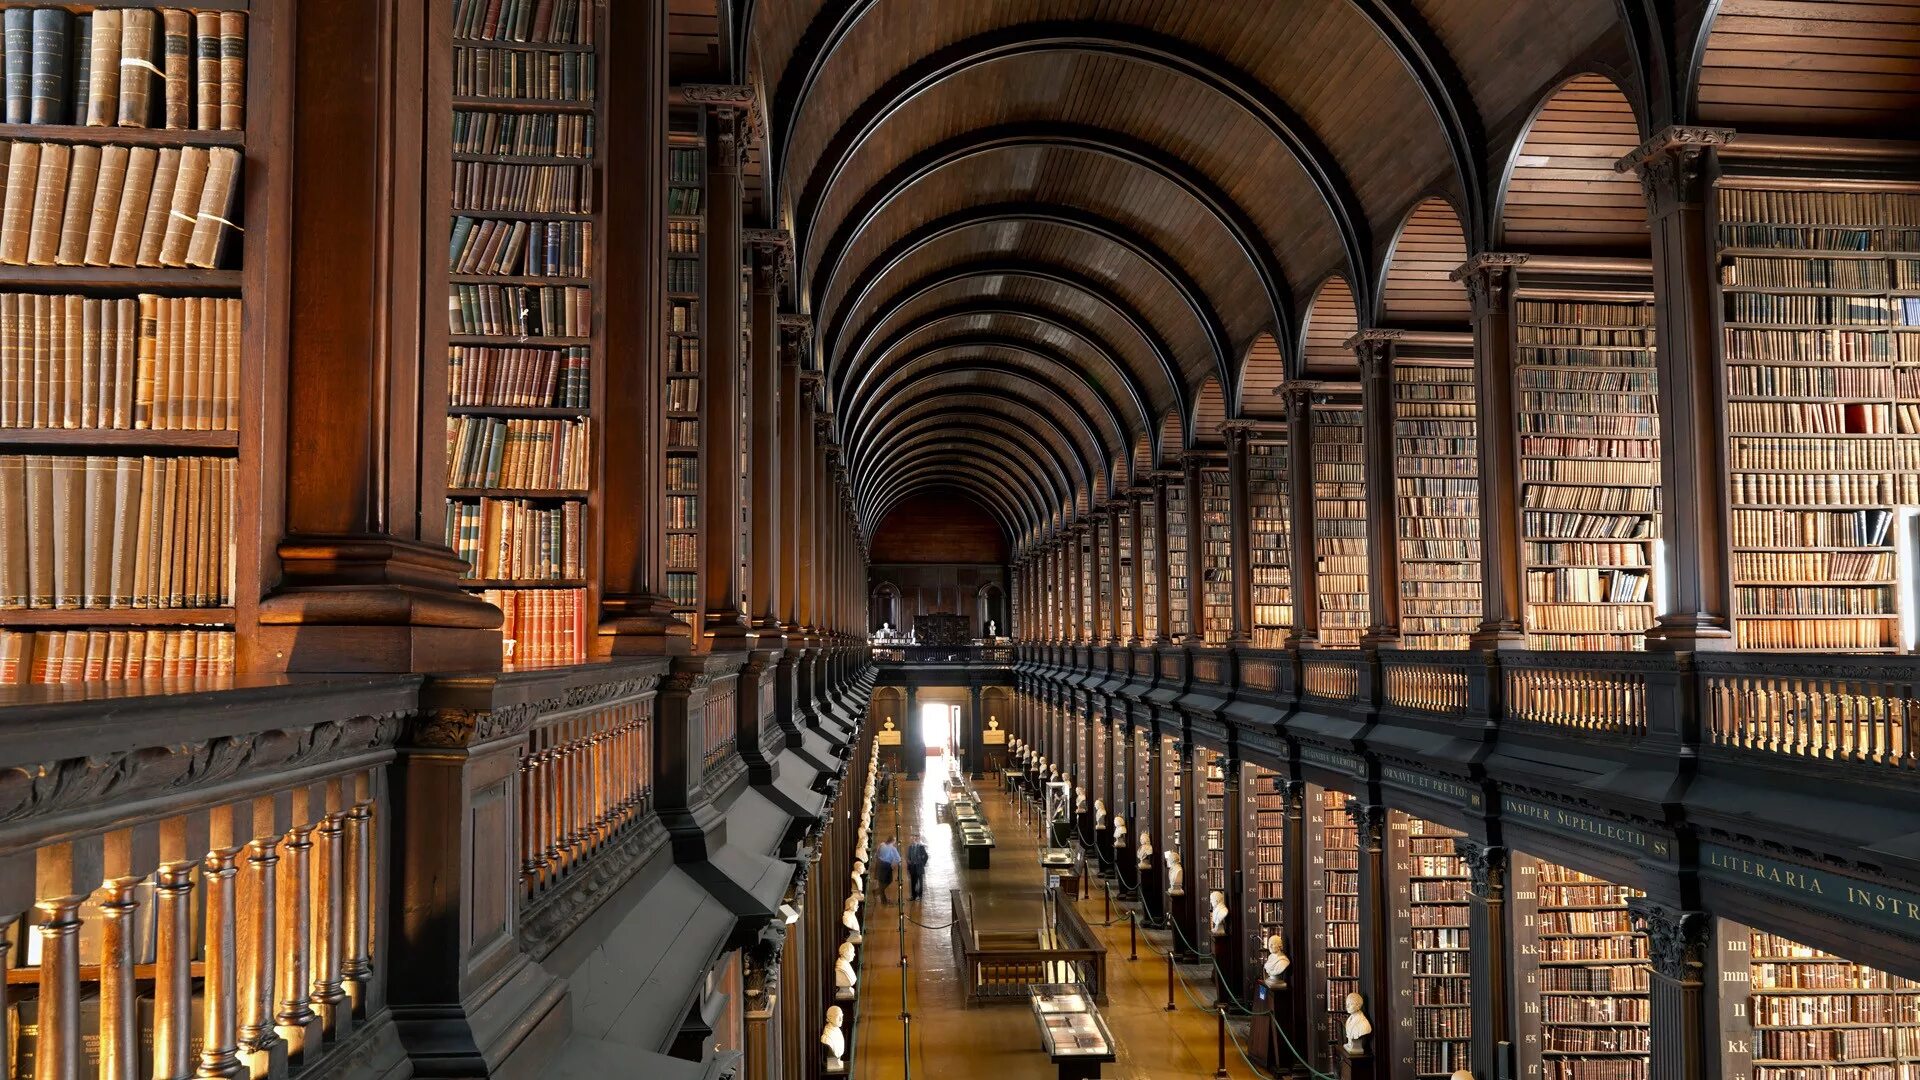 Hooked library. Библиотека Тринити-колледжа в Дублине. Библиотека Тринити-колледжа, Дублин, Ирландия. Тринити-колледж в Дублине, Ирландия. Библиотека Тринити-колледжа в Кембридже.